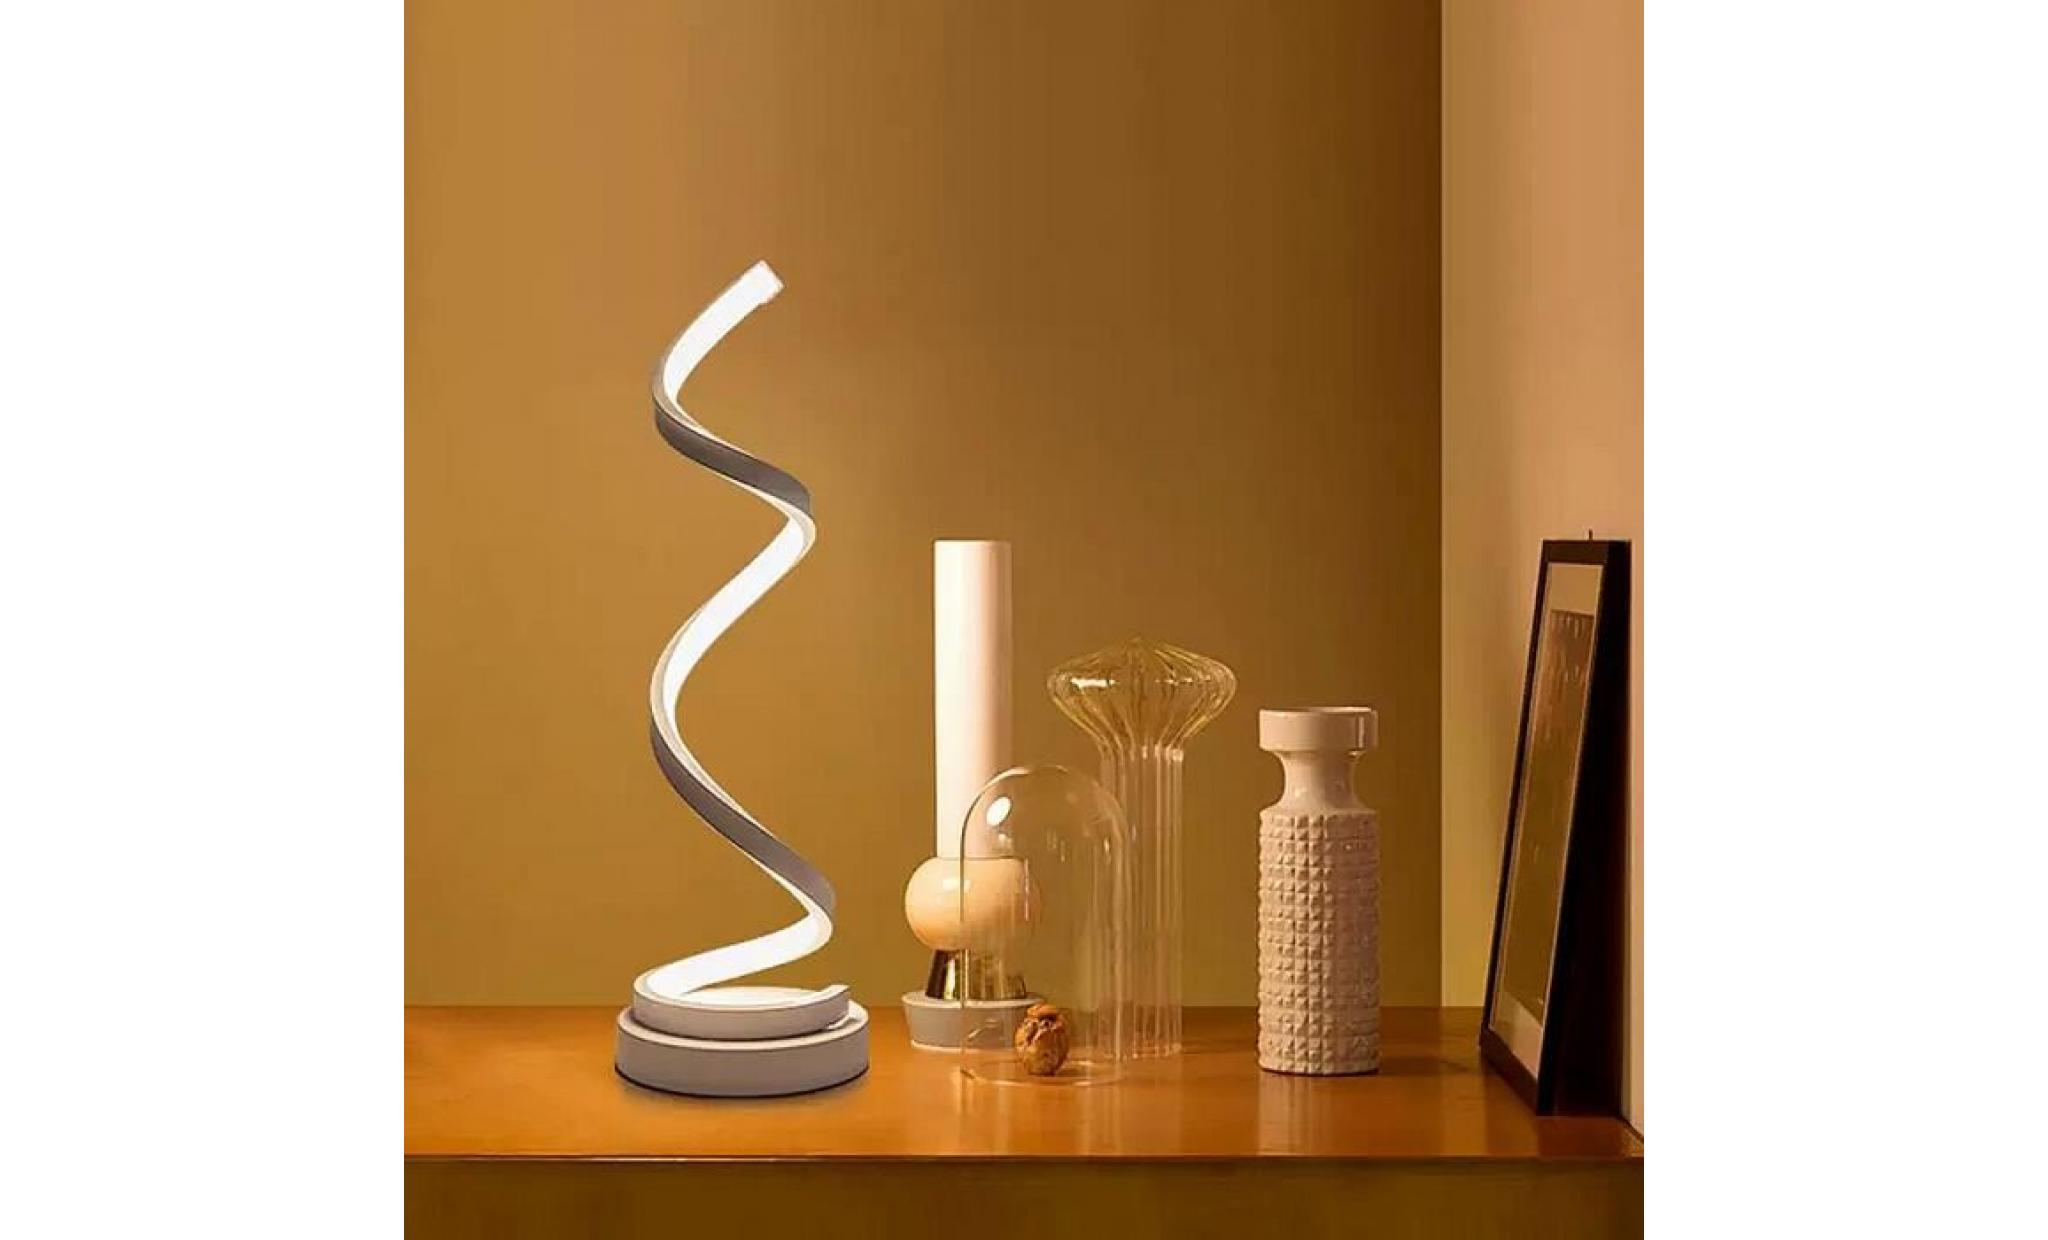 elinkume spirale led lampe de bureau 12w blanc chaud dimming incurvée lampe de table led design minimaliste  creative acrylique pas cher